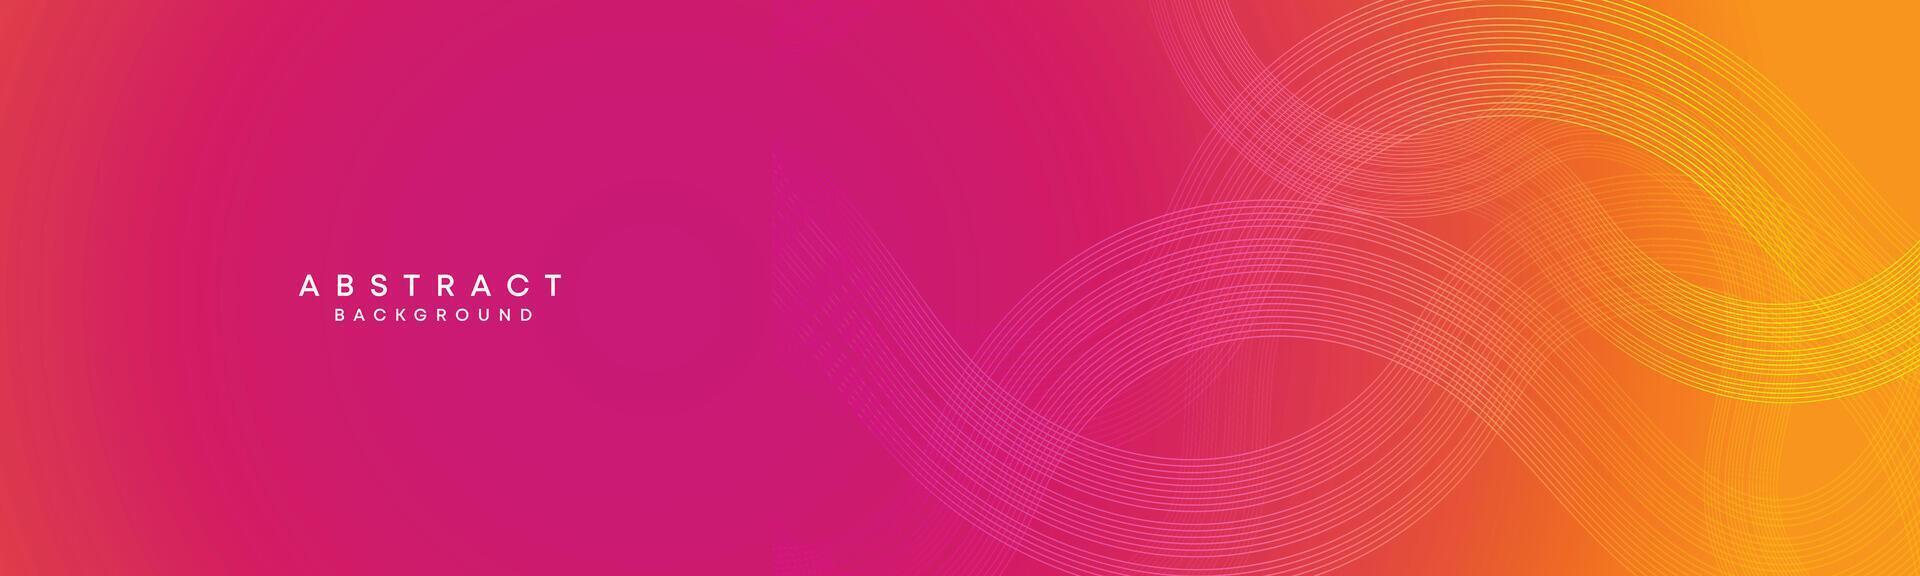 abstrakt orange, rosa lutning vinka cirklar rader teknologi webb baner bakgrund. modern gul, lila lutning med lysande rader och skinande geometrisk diagonal form för broschyr, omslag, rubrik vektor